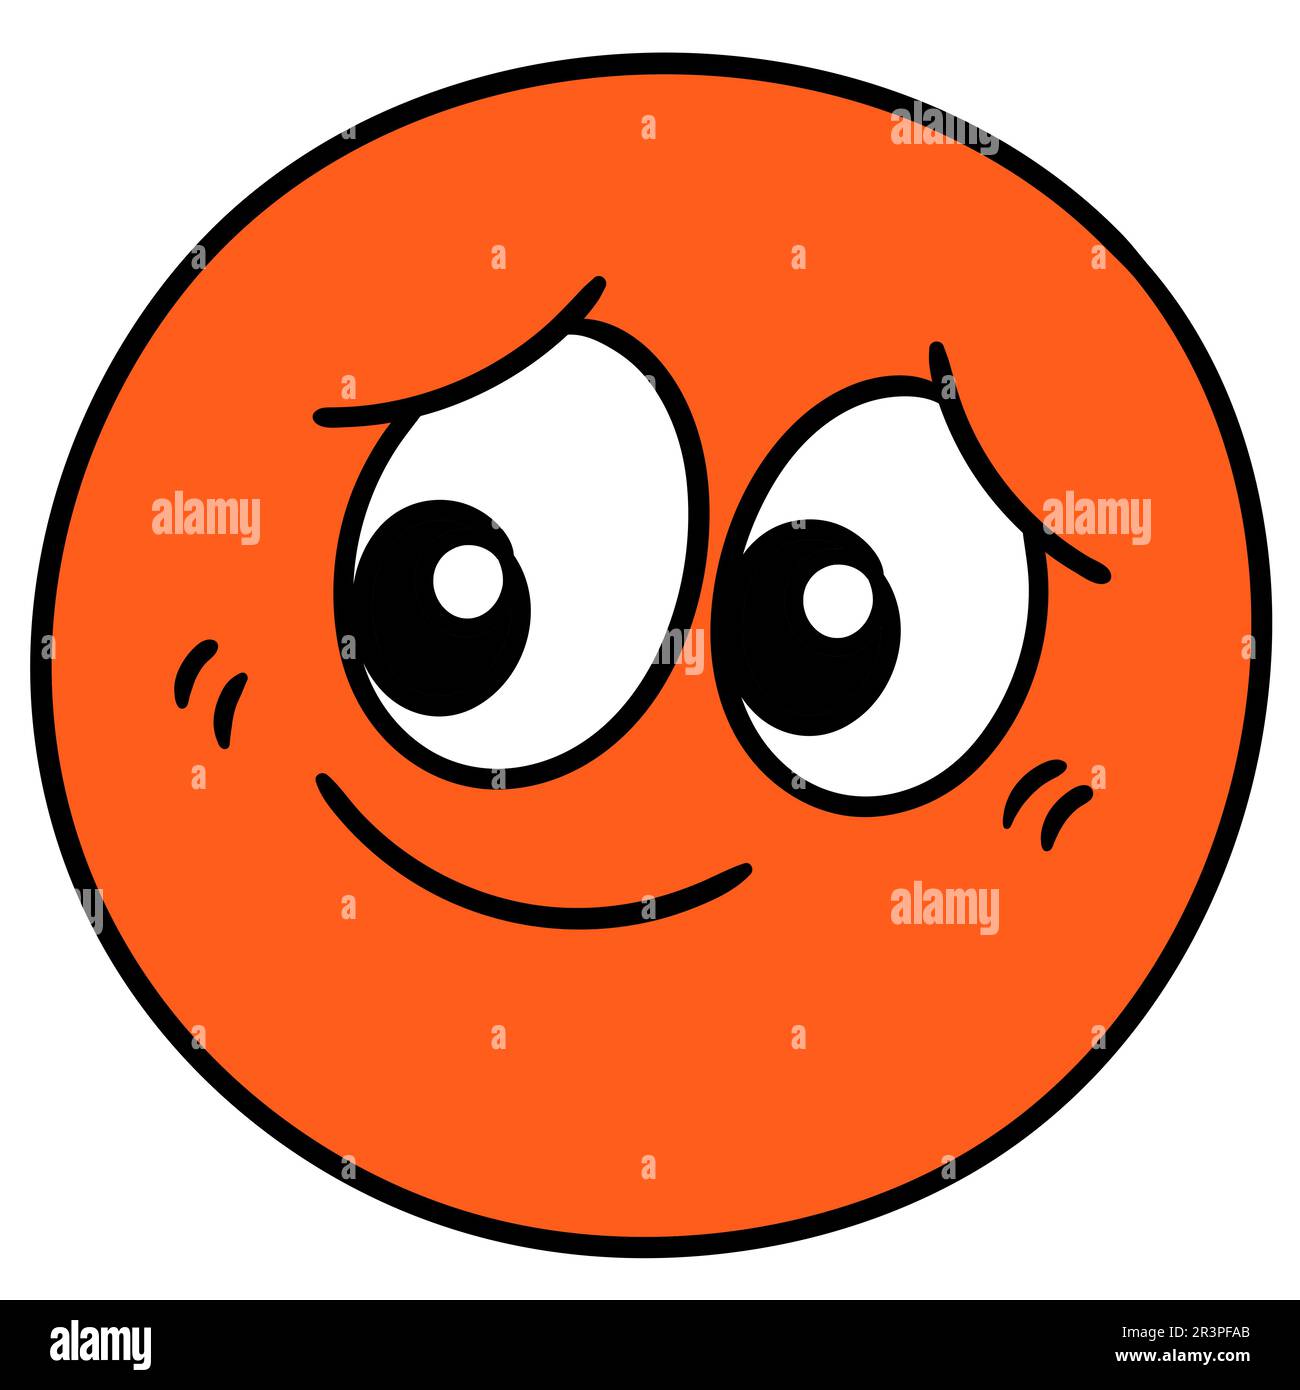 Le ballon de l'émoticône orange est rougir, dandindle kawaii. icône doodle Banque D'Images